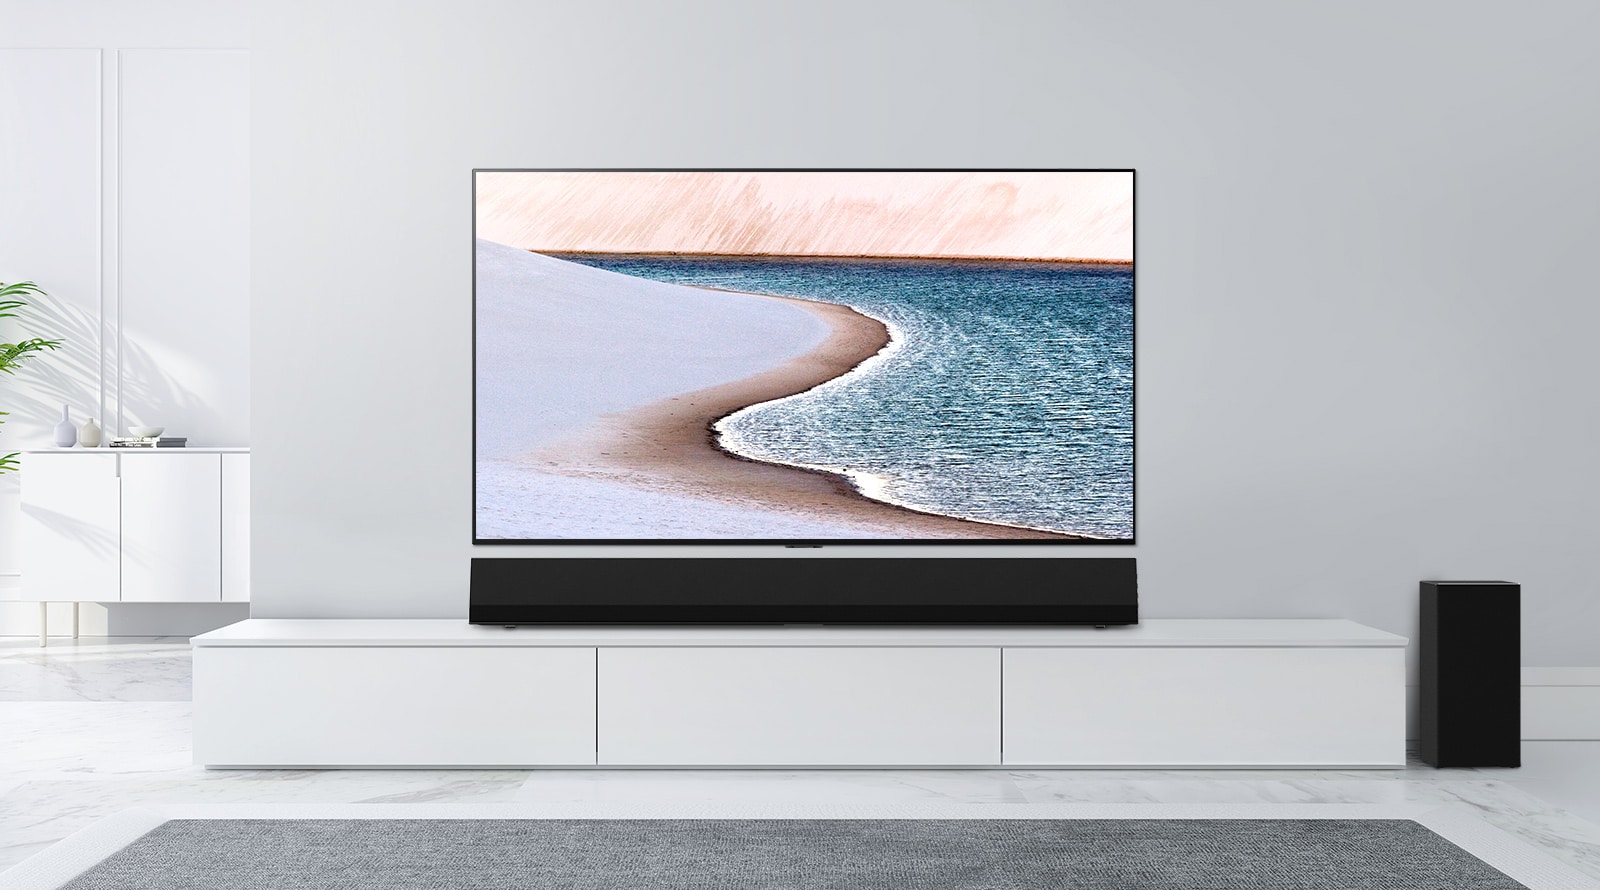 Телевизор установлен на светло-серой стене. LG Soundbar находится под ним на белом корпусе. Телевизор показывает пляж.